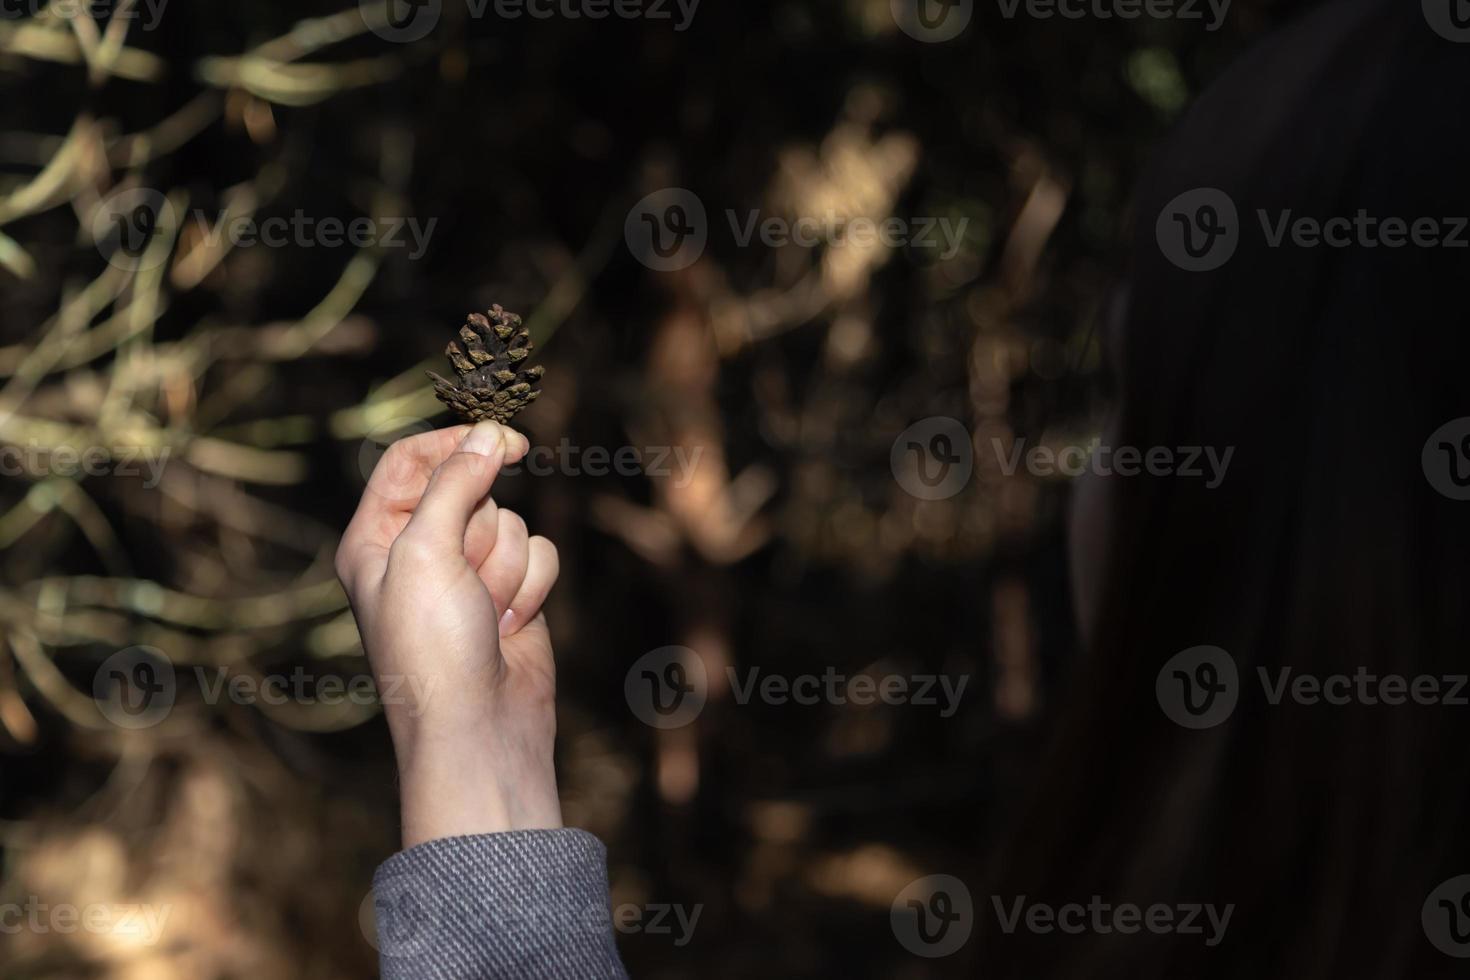 Primer plano de la mano de la mujer sosteniendo un cono de pino con un fondo borroso natural foto